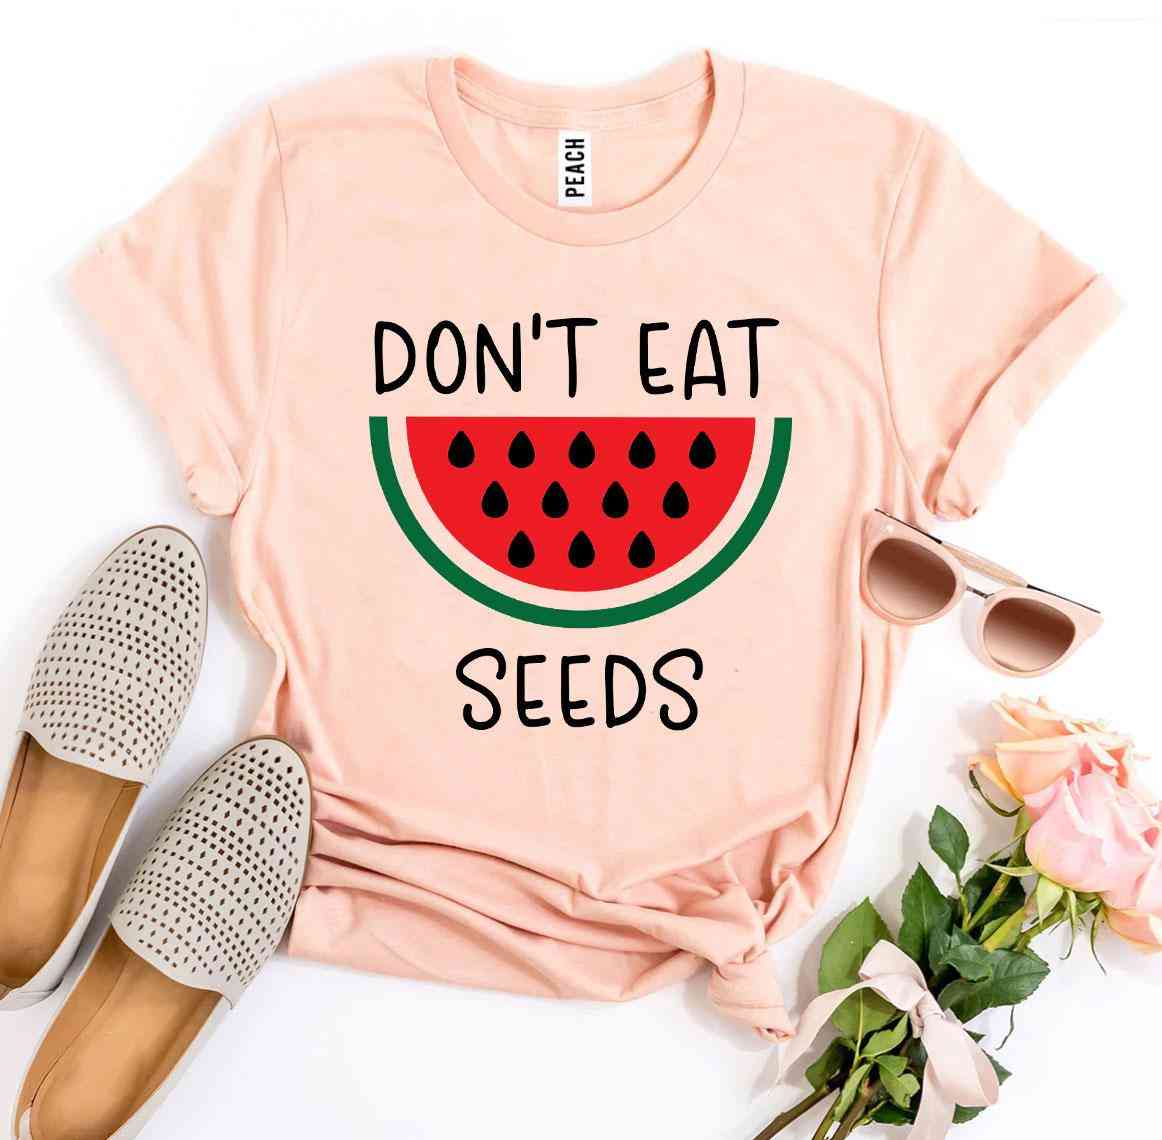 Nejedzte tričko s potlačou semien vodného melónu